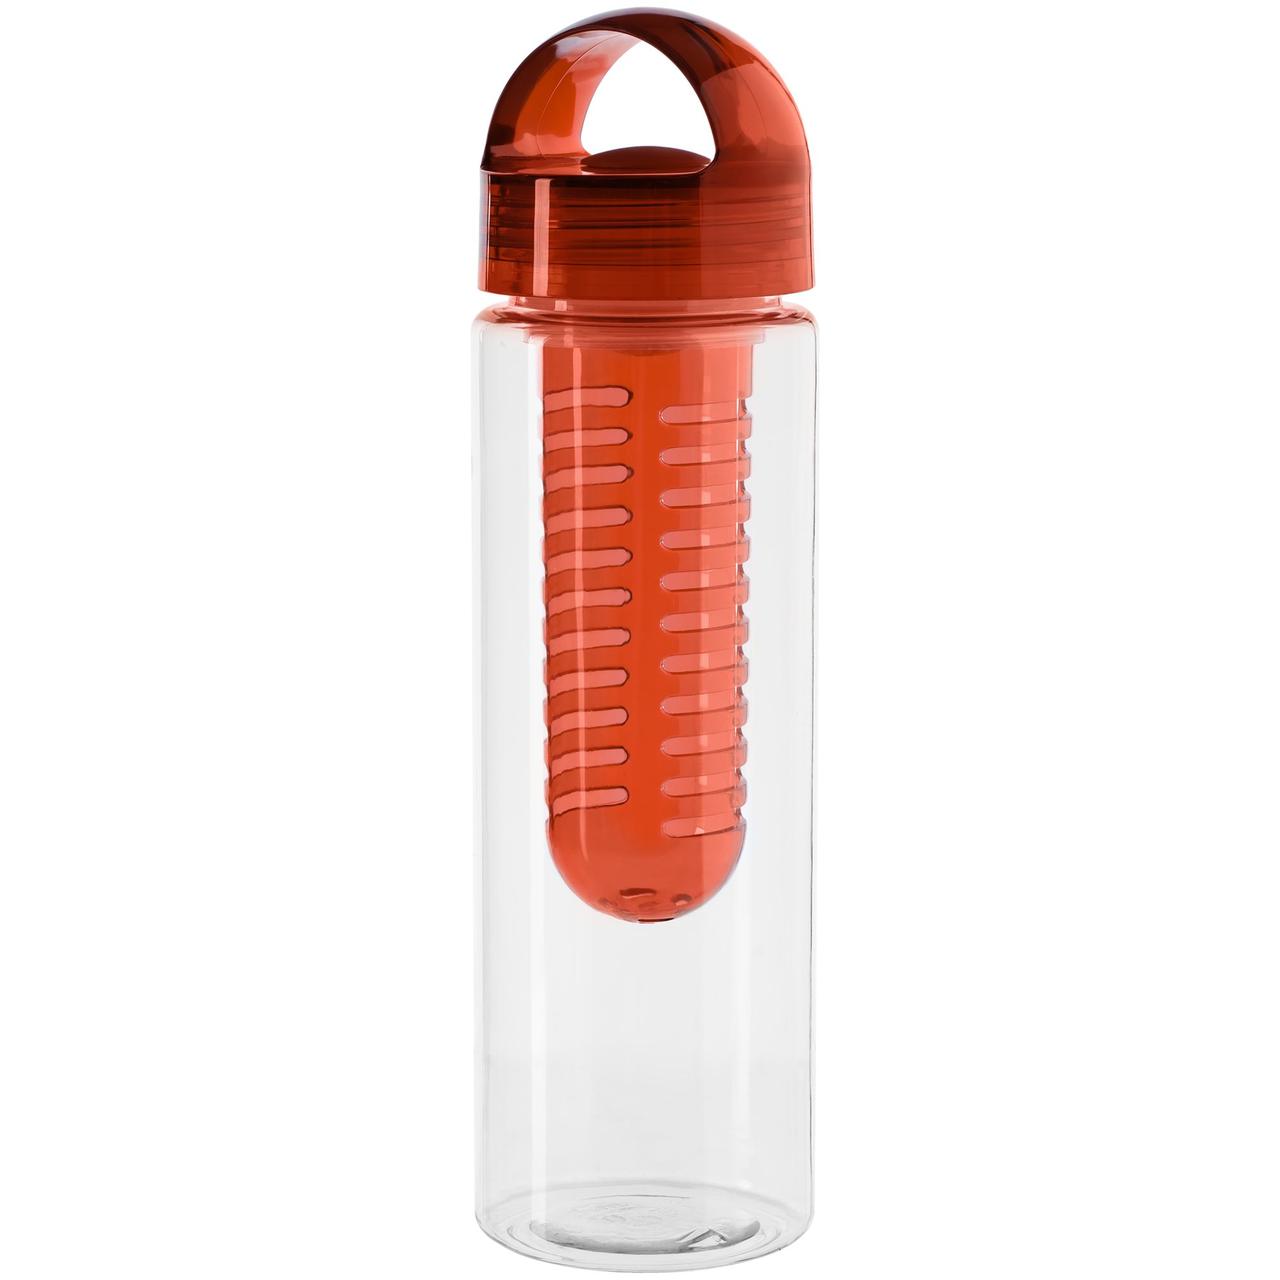 Бутылка для воды Good Taste, оранжевая (артикул 10394.20)